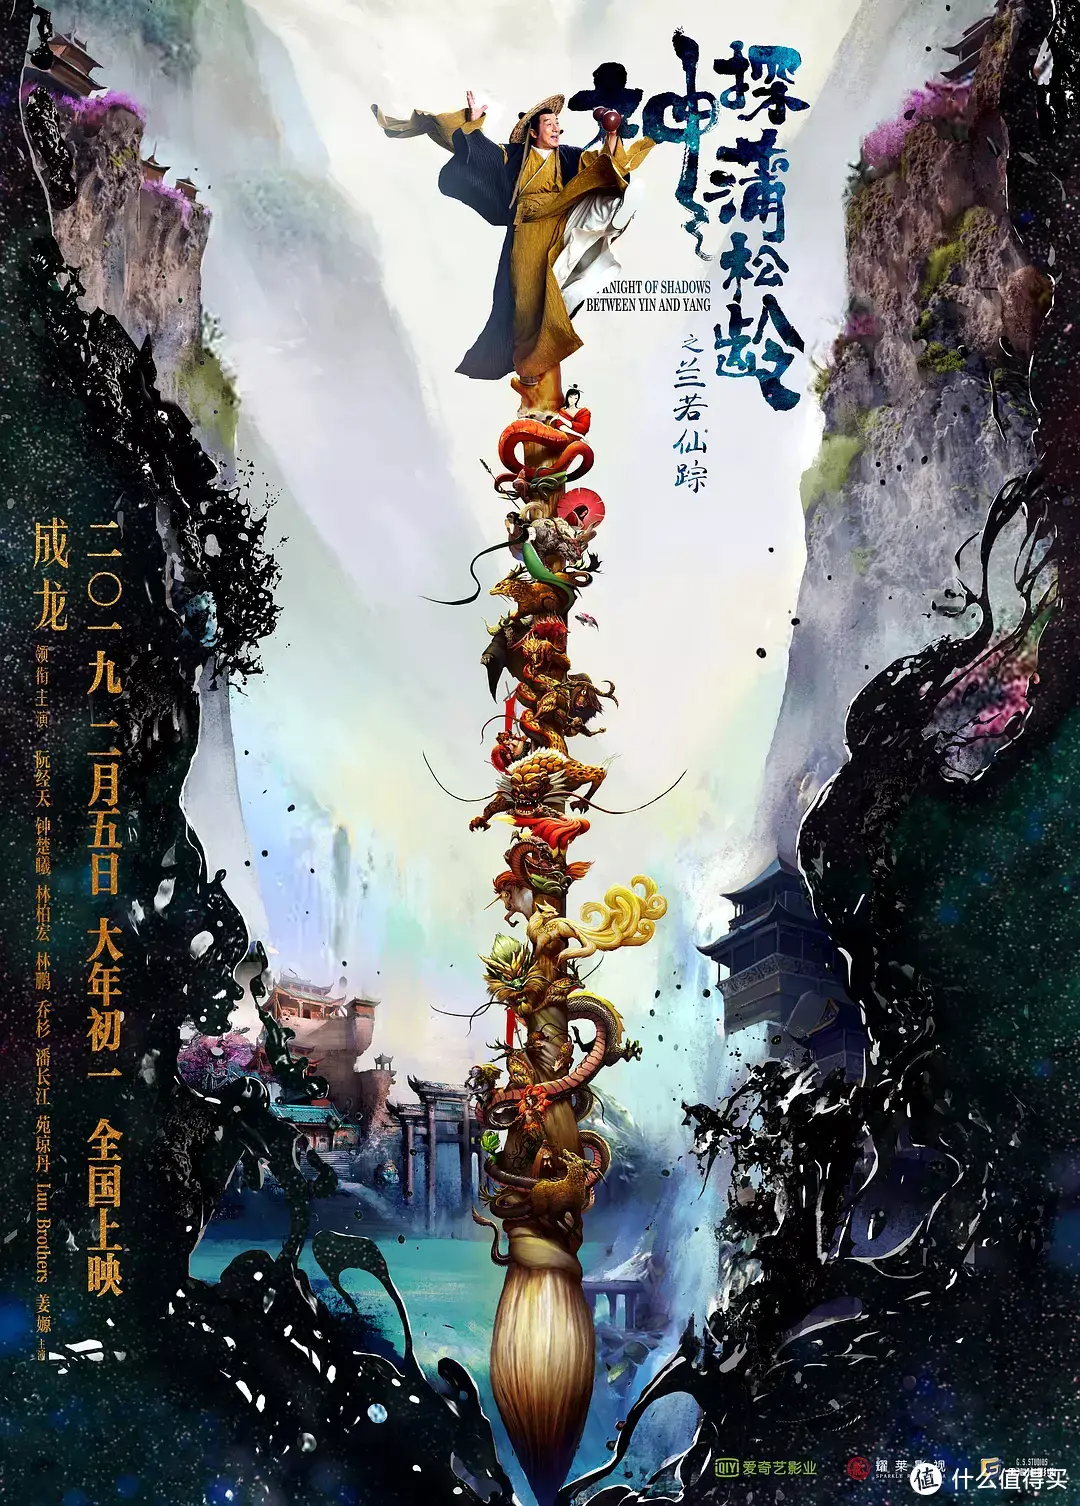 2019年大年初一春节档值得期待的8部华语电影